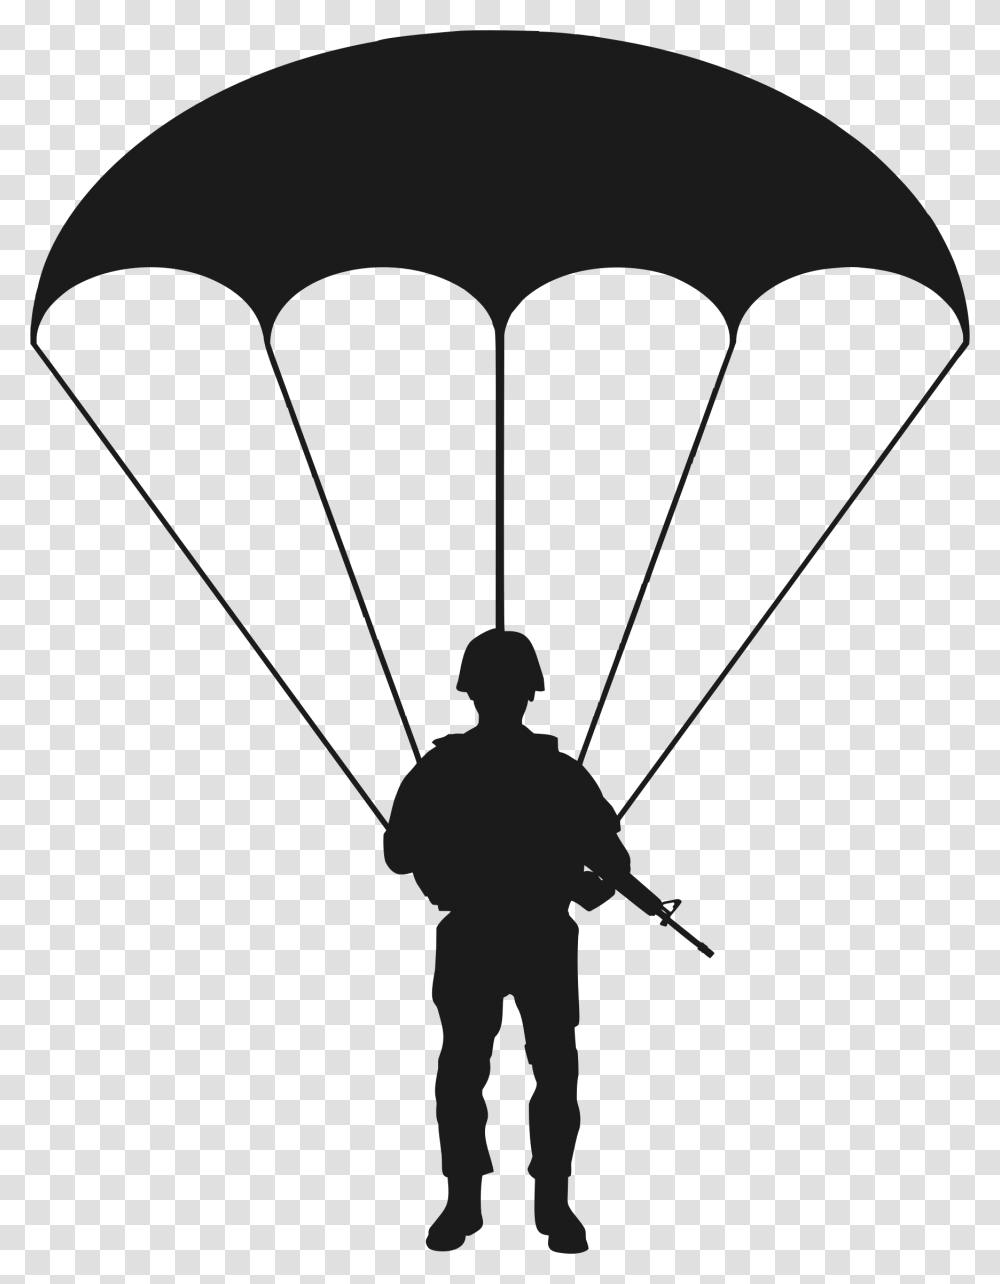 Paratrooper Silhouette Clip Arts Paratrooper Silhouette, Person, Human, Parachute, Utility Pole Transparent Png